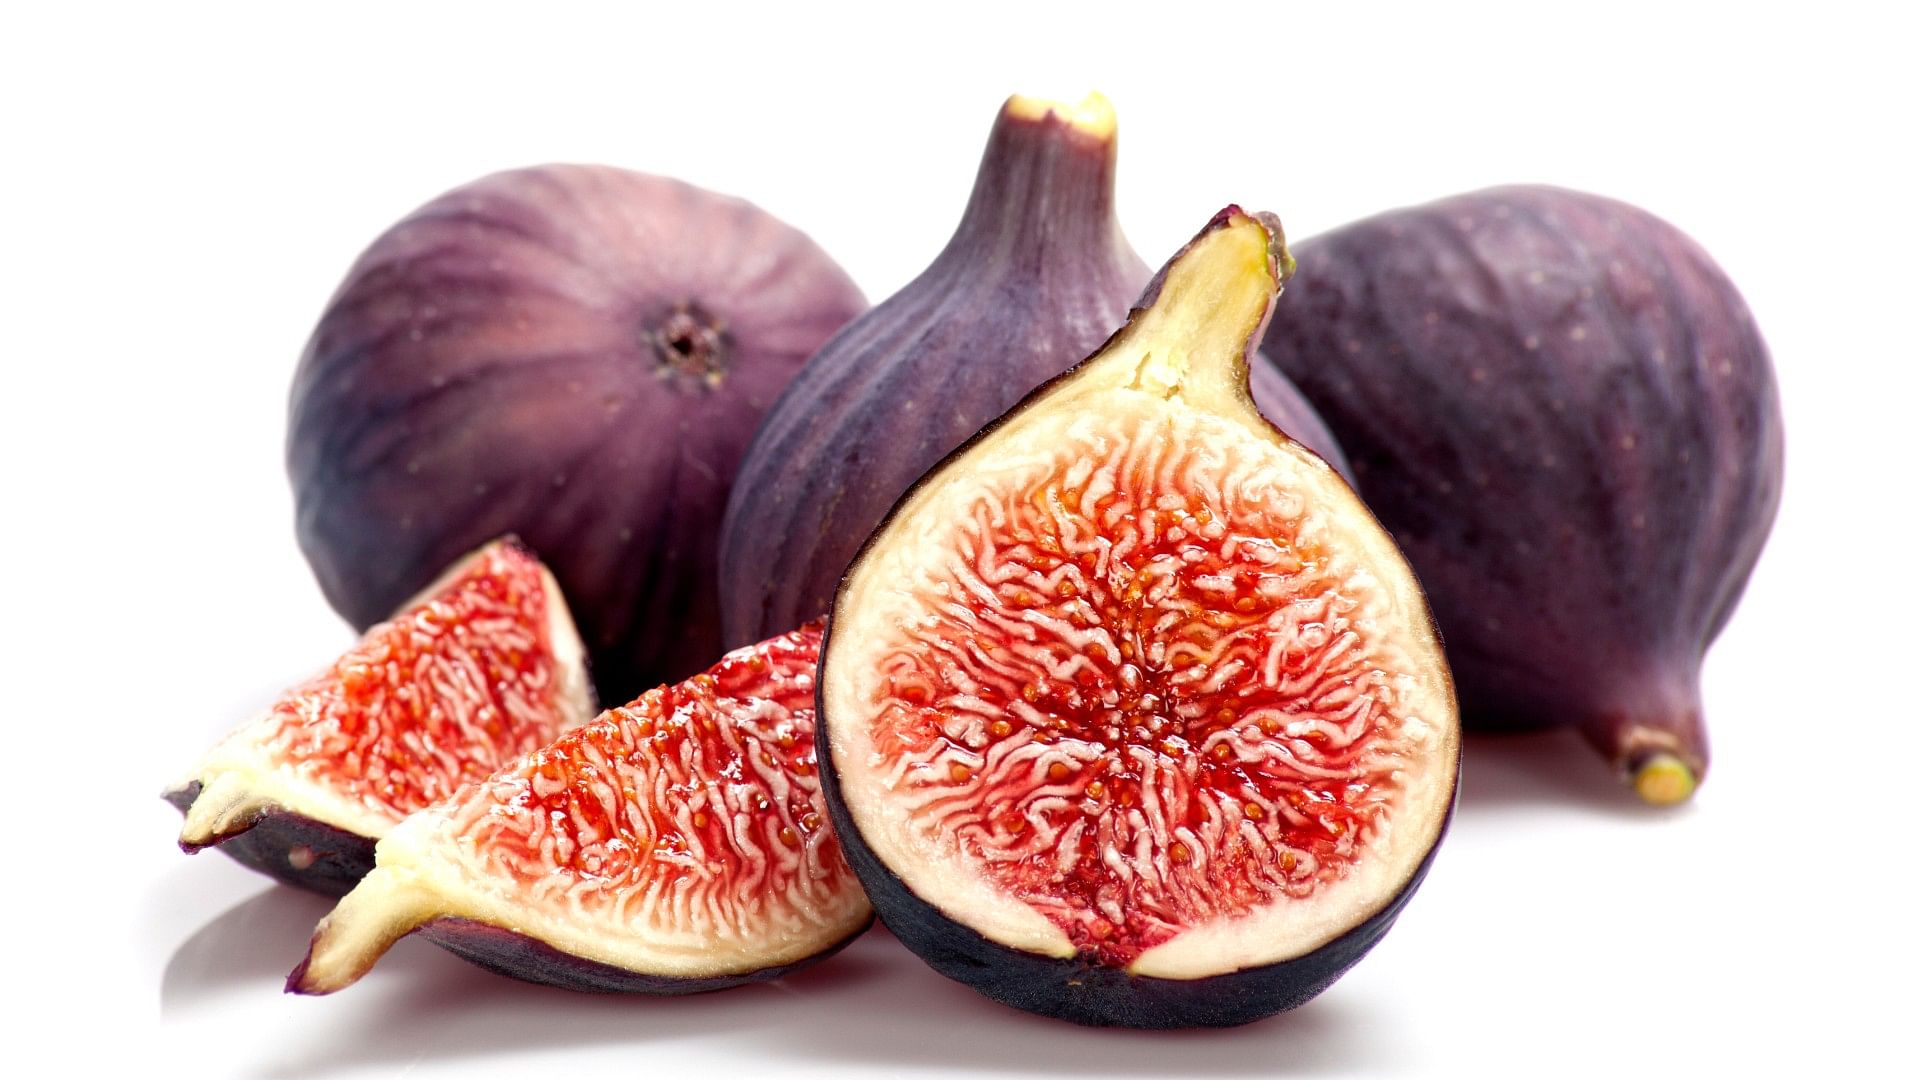 Anjeer Khane Ke Fayde Benefits Of Eating Figs in Hindi